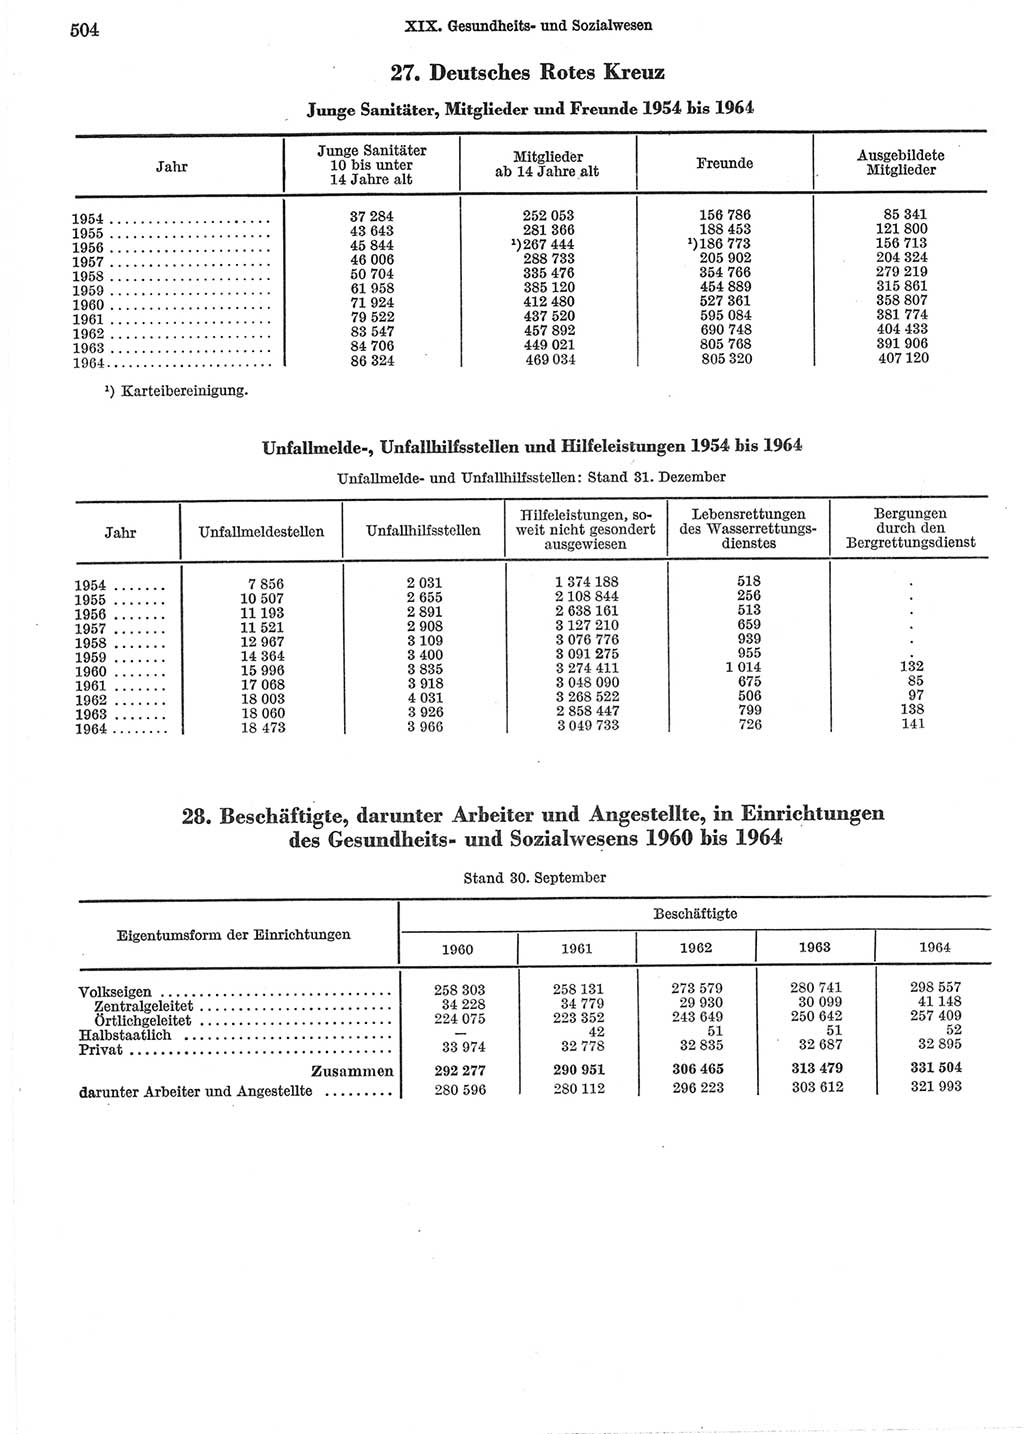 Statistisches Jahrbuch der Deutschen Demokratischen Republik (DDR) 1965, Seite 504 (Stat. Jb. DDR 1965, S. 504)